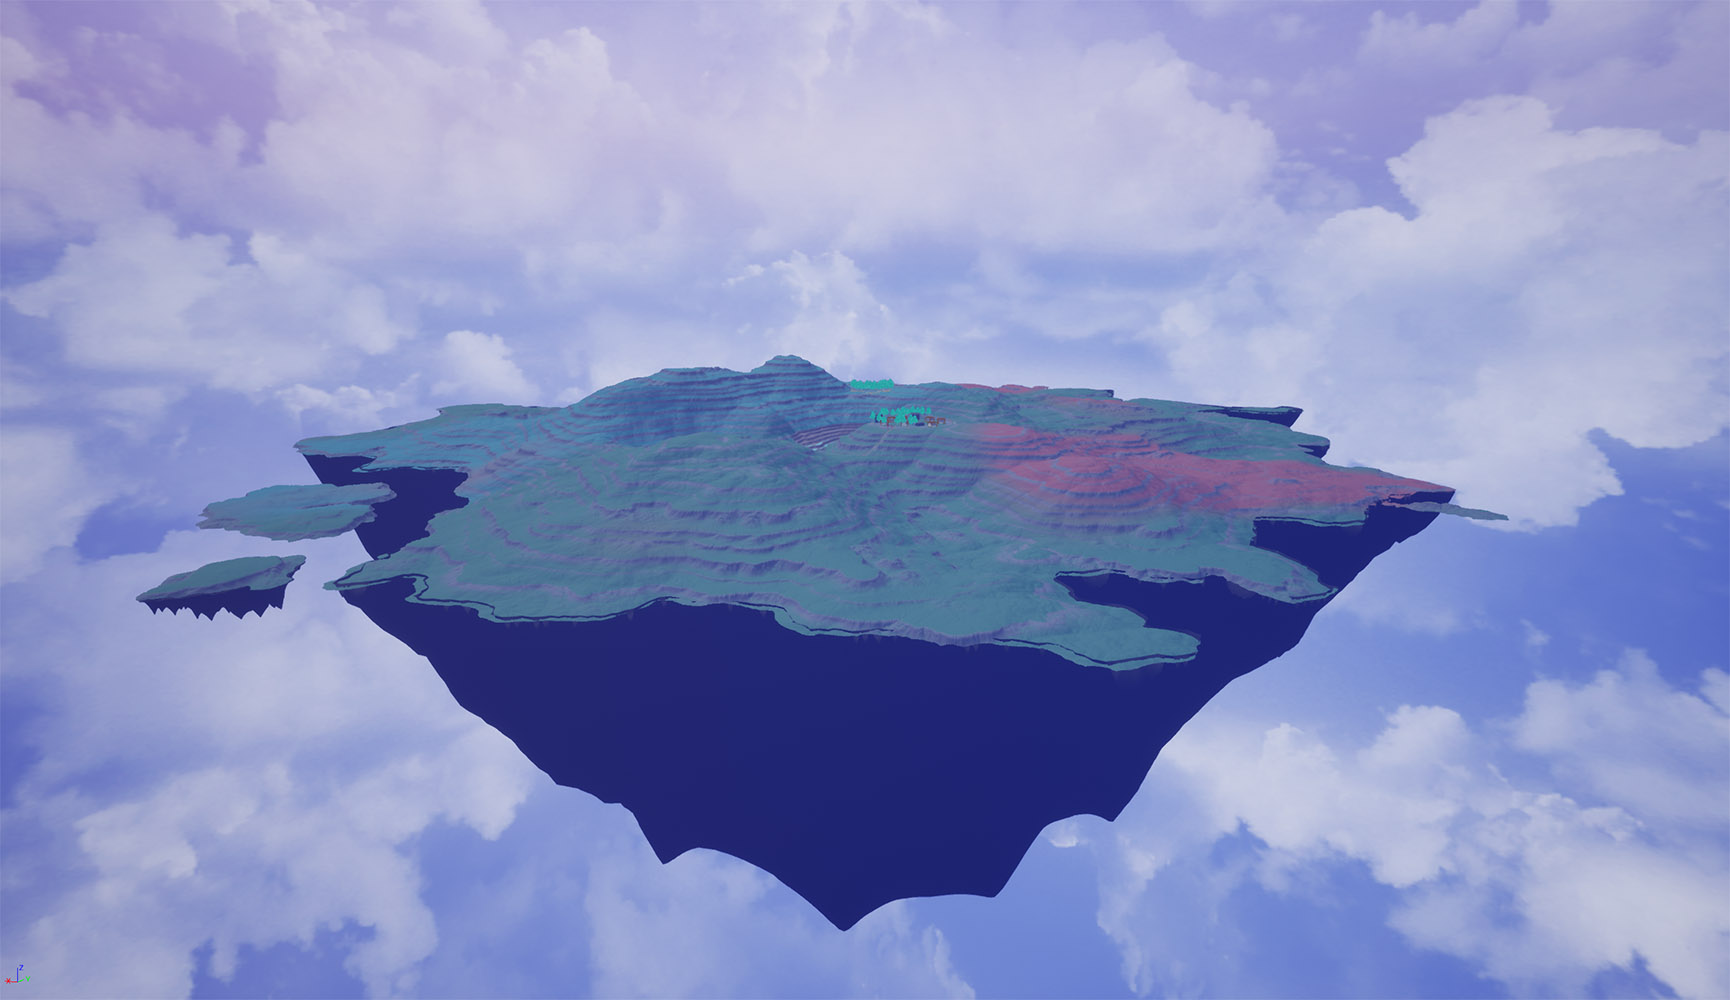 game screenshot, a floating island